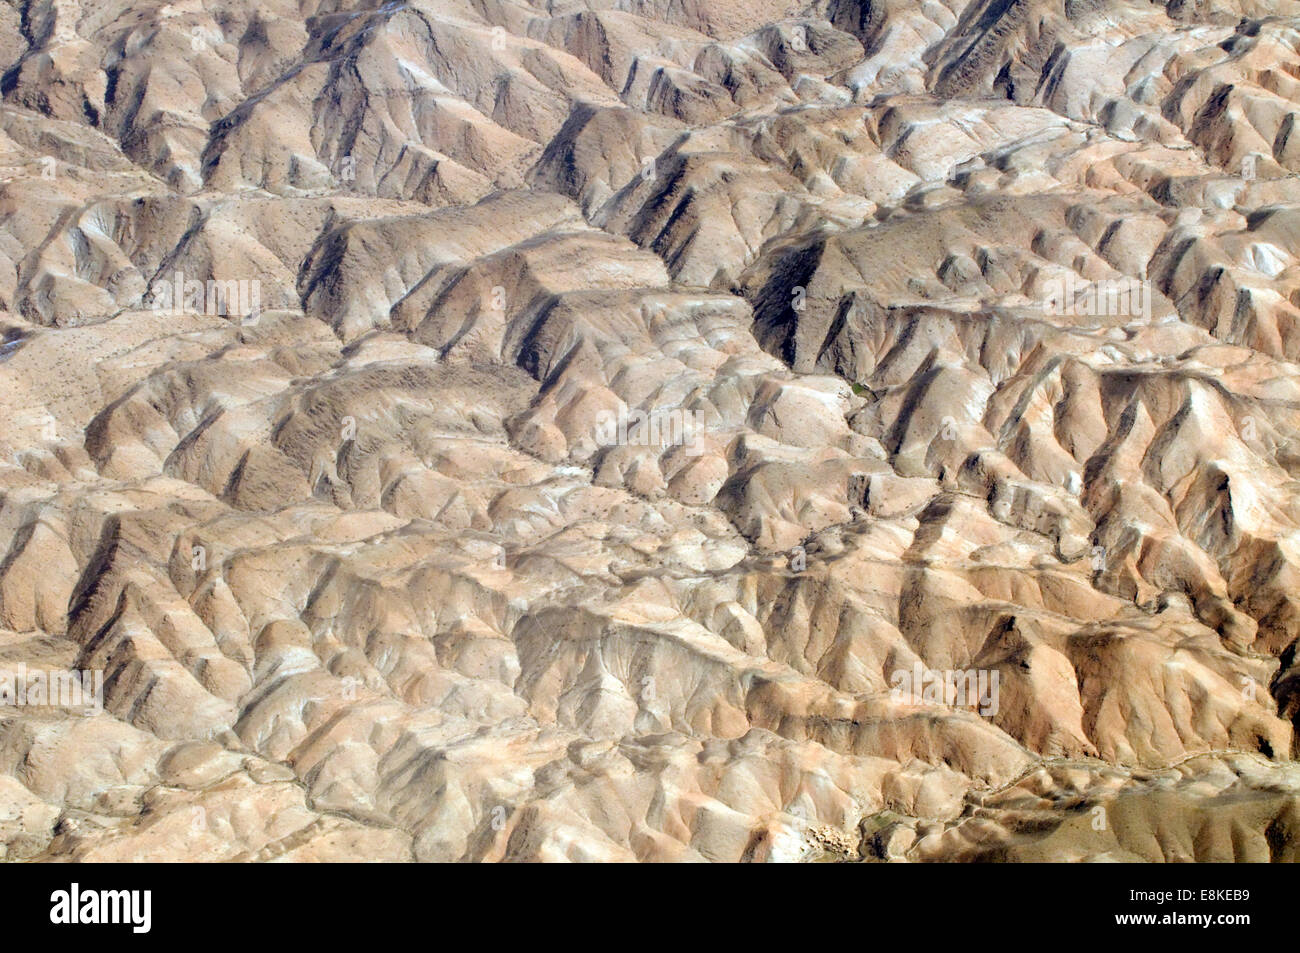 Vista aerea di formazioni rocciose in sterile Il Turkmenistan è regione montagnosa. La gamma robusta Foto Stock